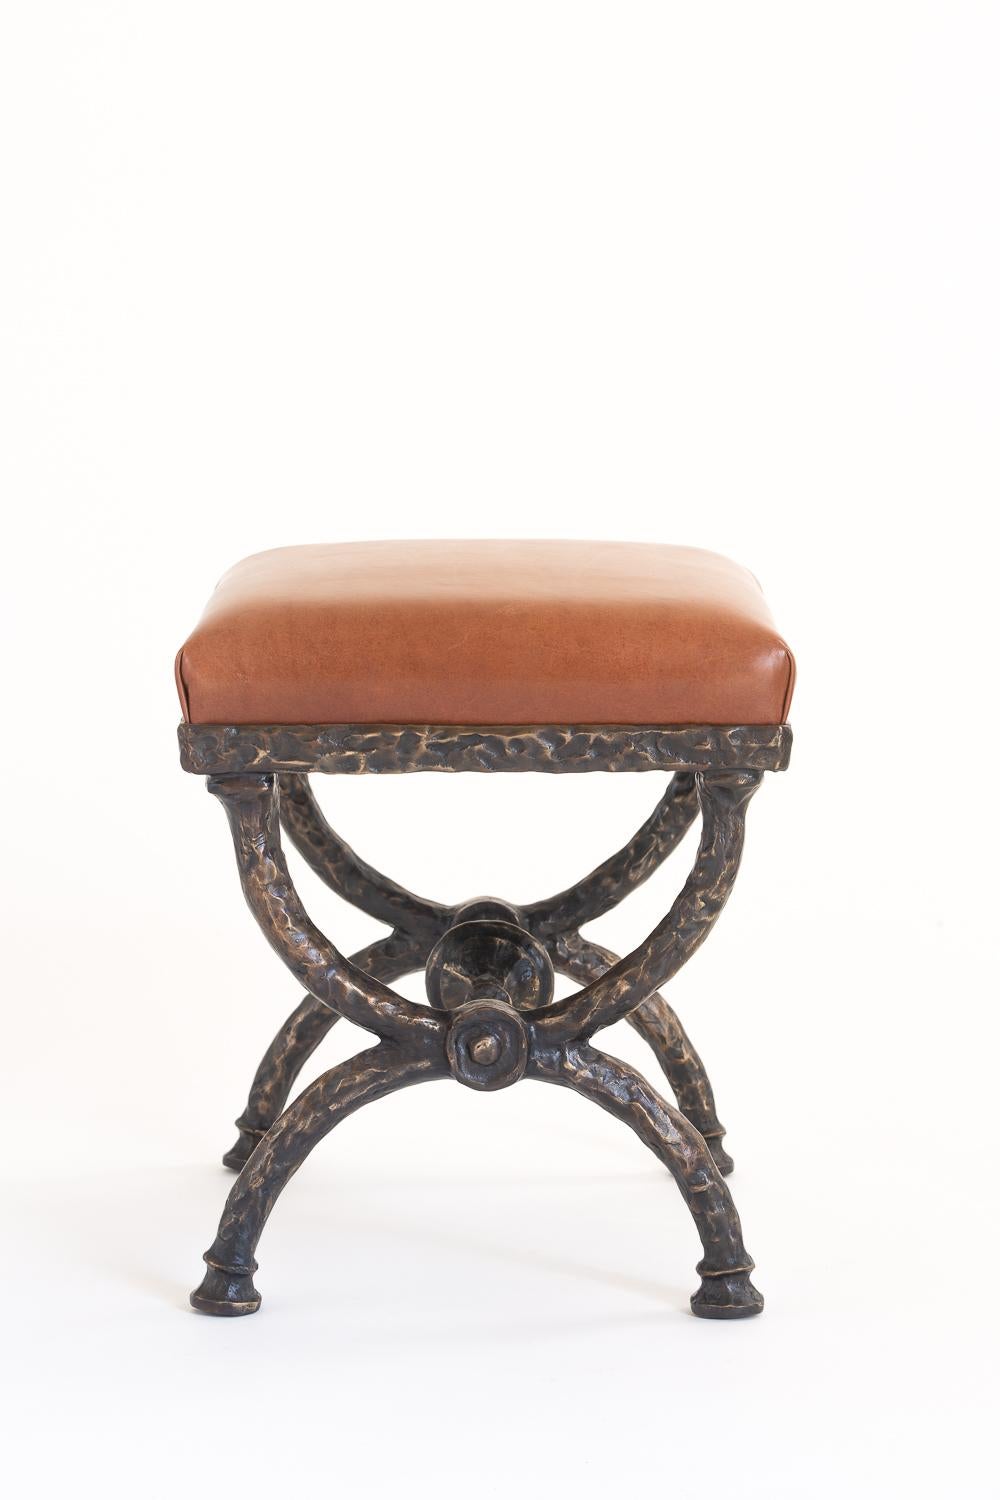 Dieser handgeformte Hocker aus Bronze ist handgeschmiedet und mit einem Sitz aus braunem oder schwarzem Leder ausgestattet. Jedes Stück ist nummeriert und gestempelt. Sondergrößen und -ausführungen sind erhältlich.